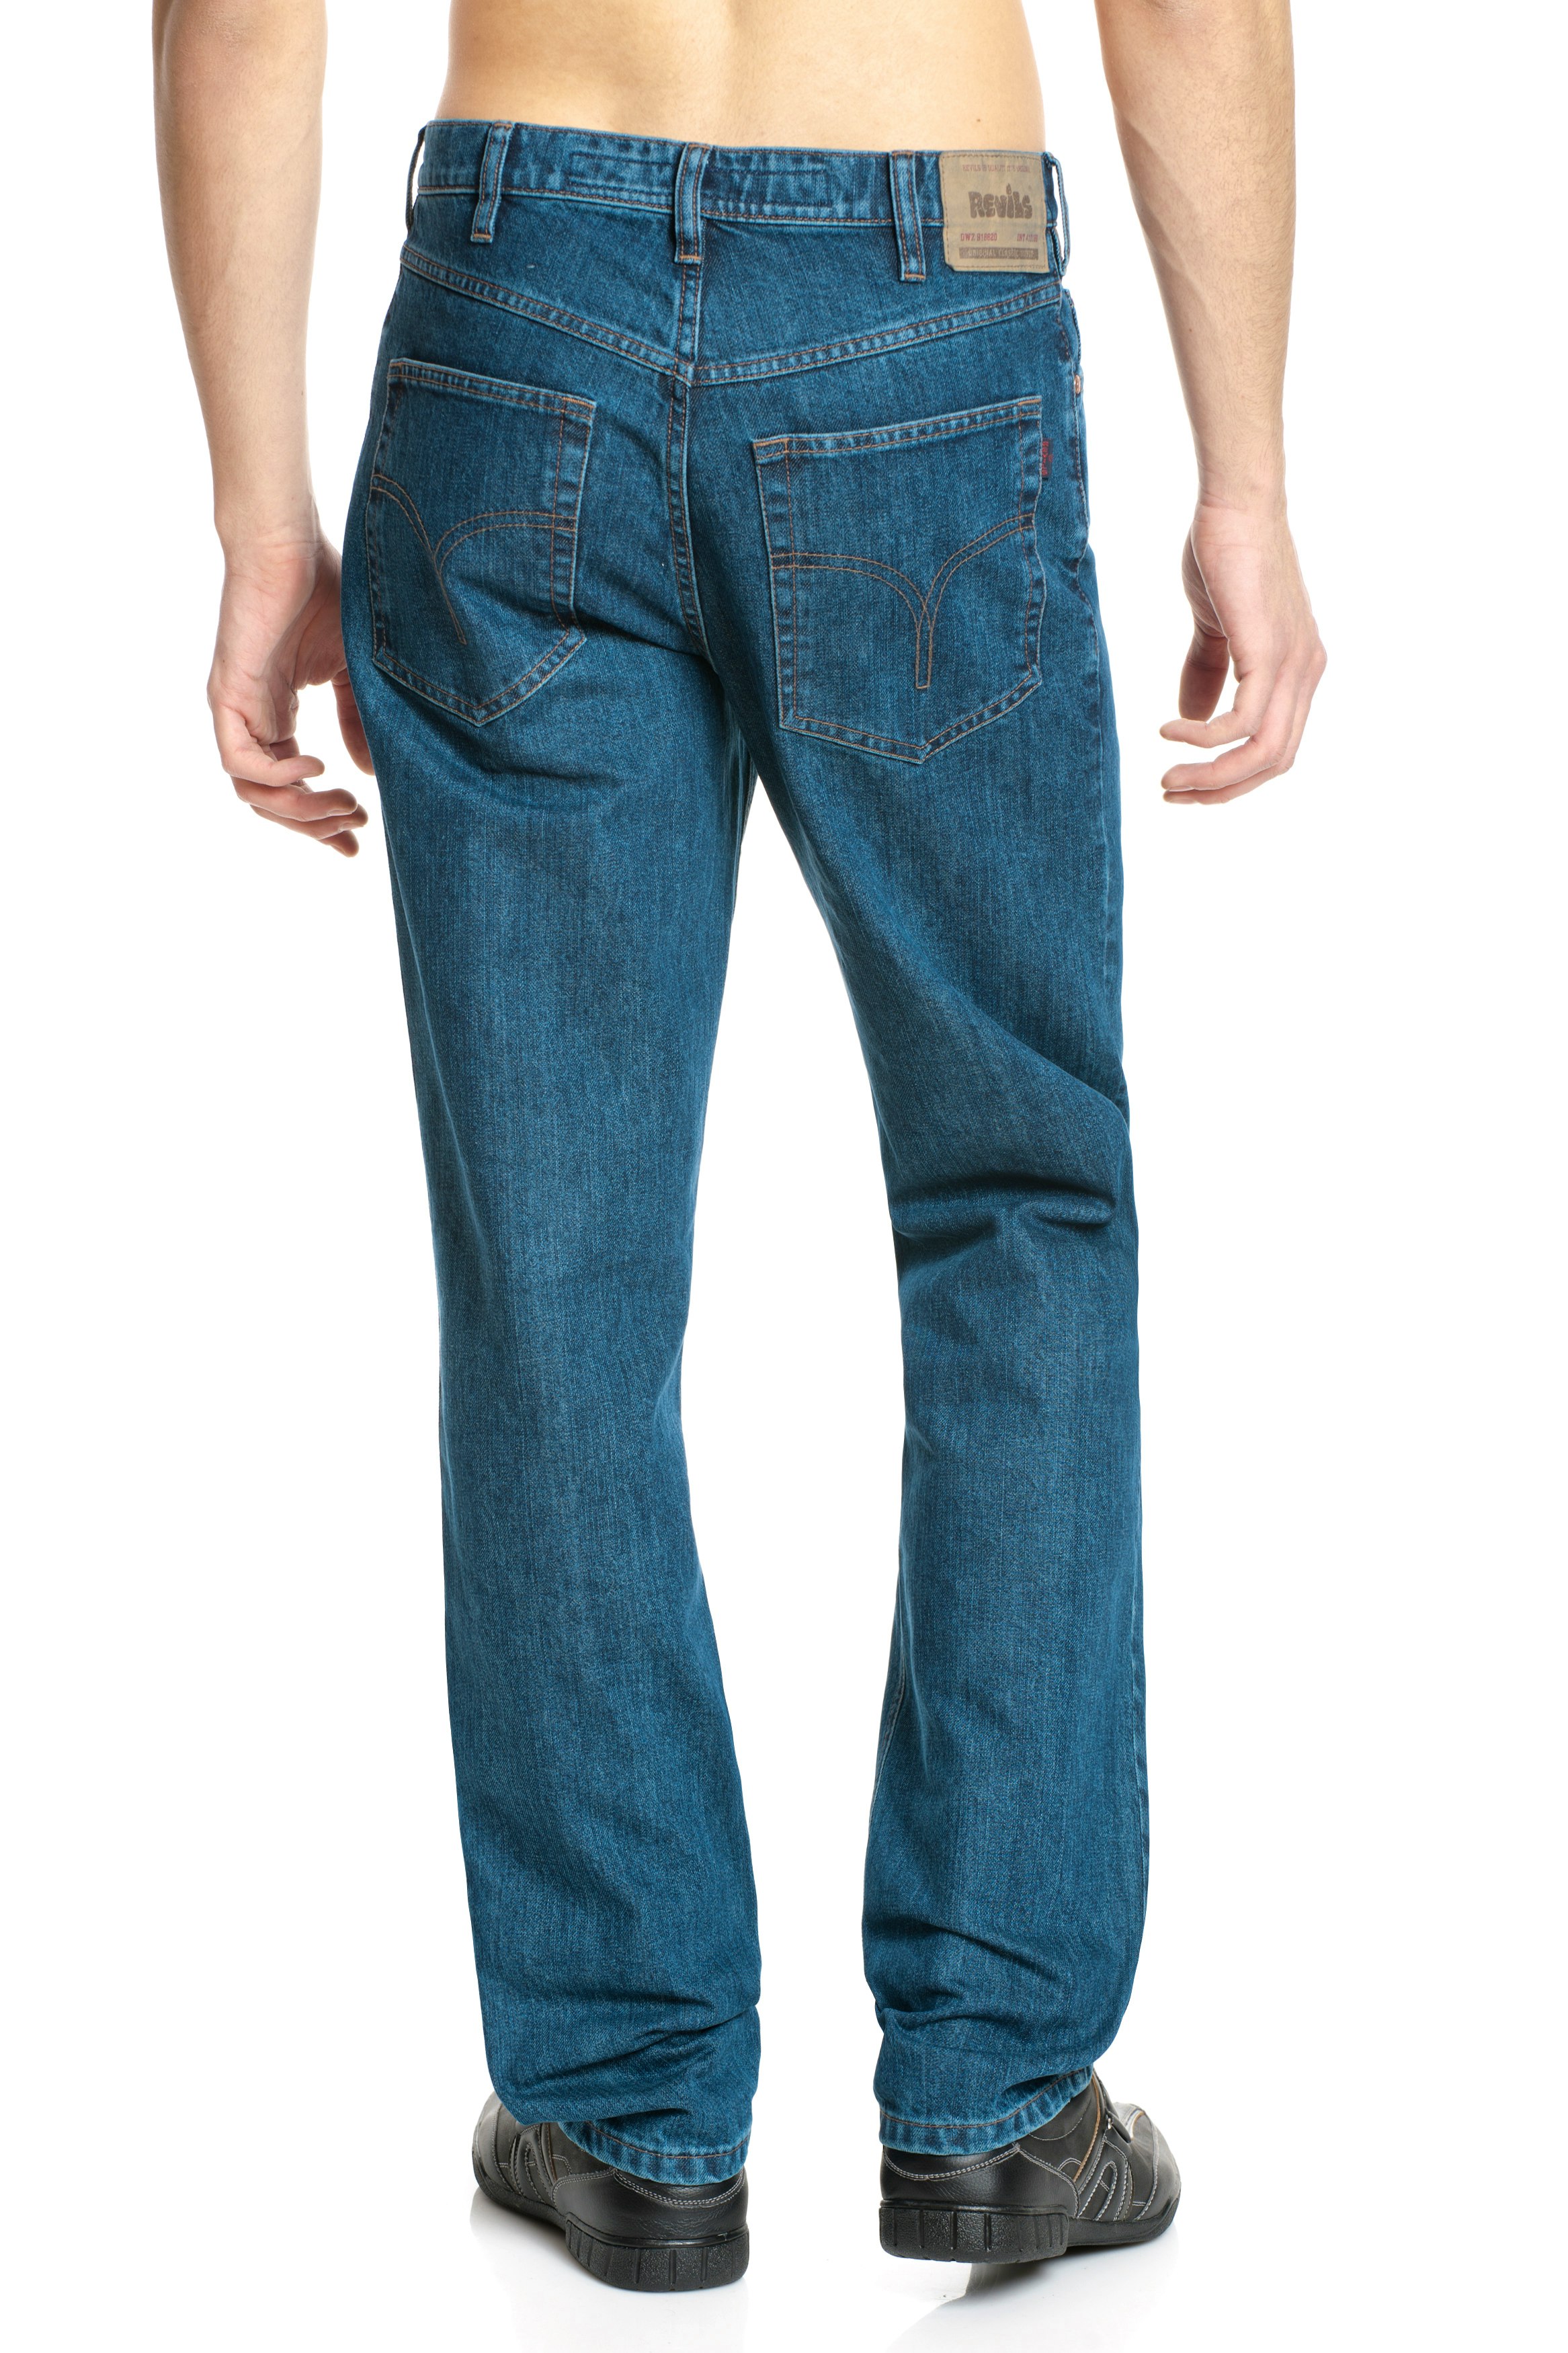 Revils 606 Five Pocket Comfort Jeans bis Länge 40